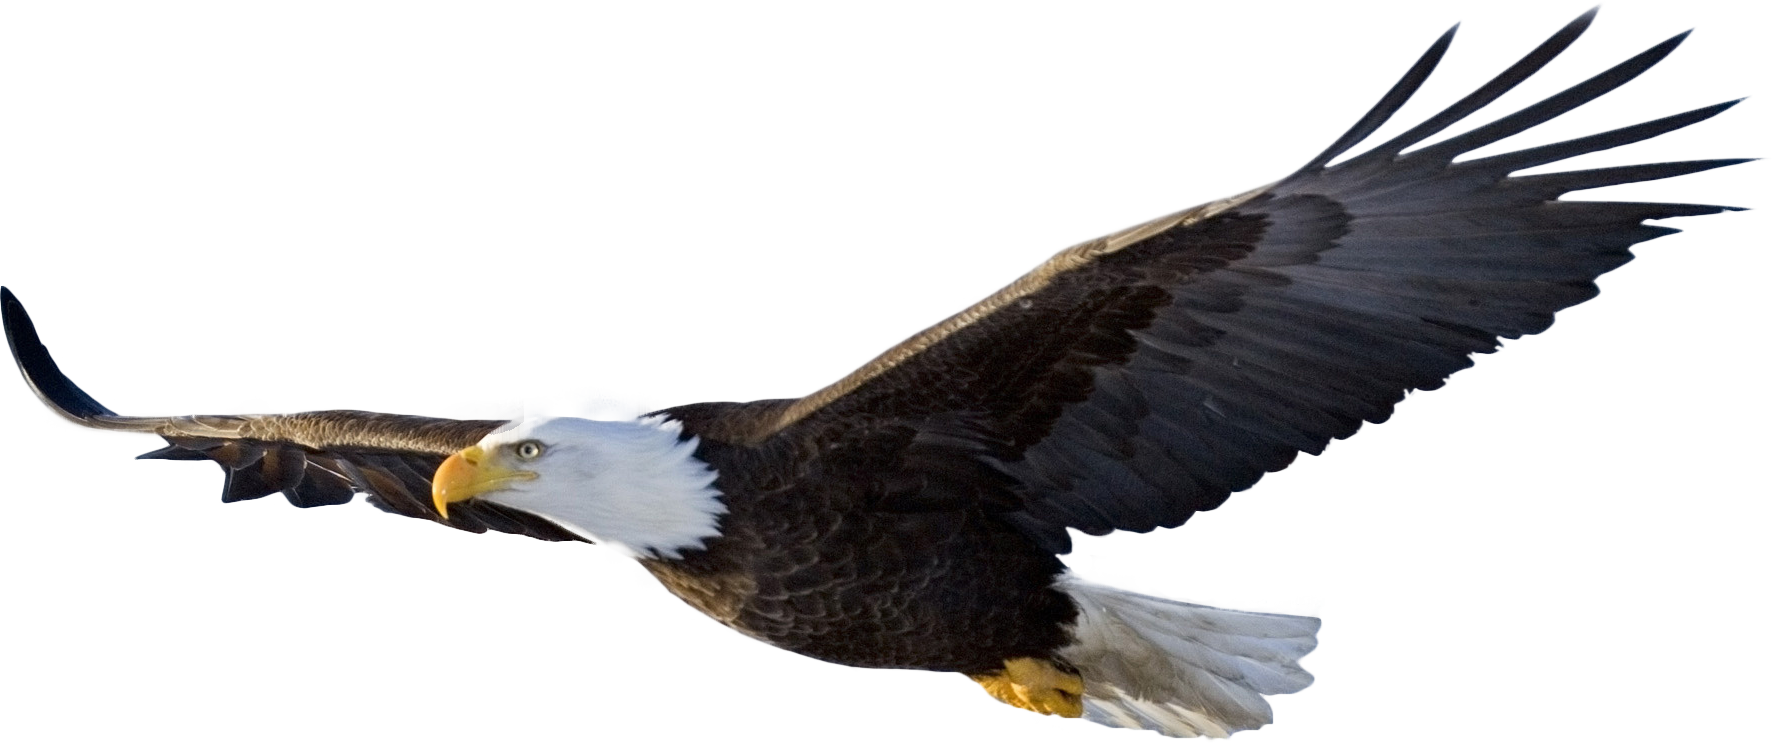 Eagle logo PNG image, free do